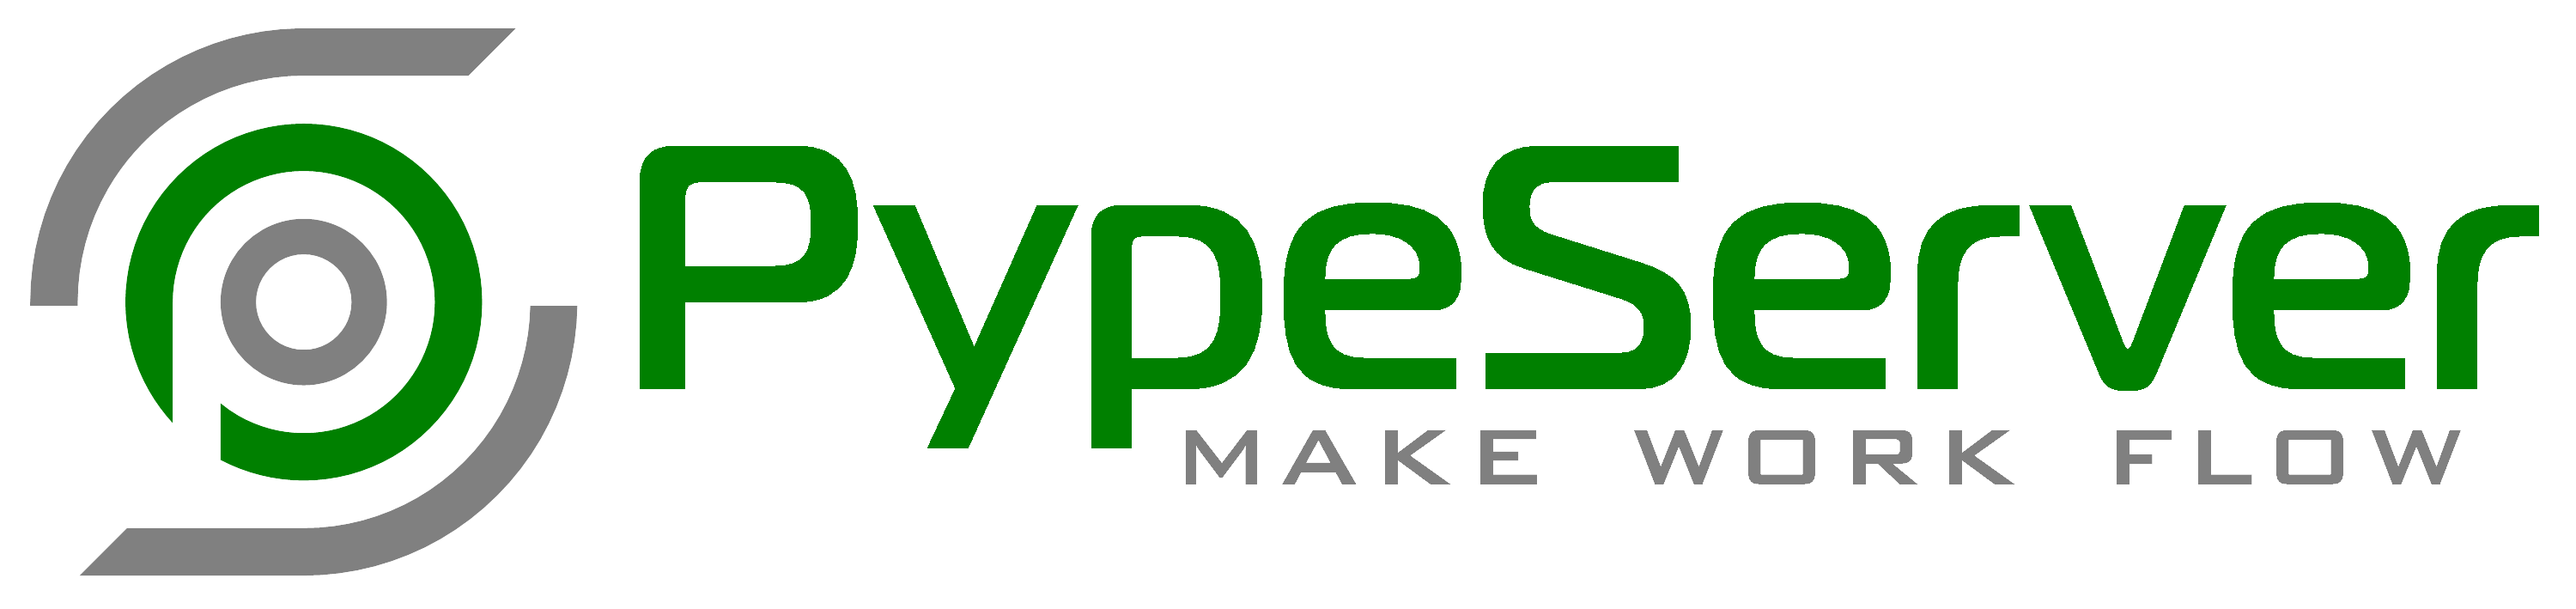 PypeServer using eVolve MEP software